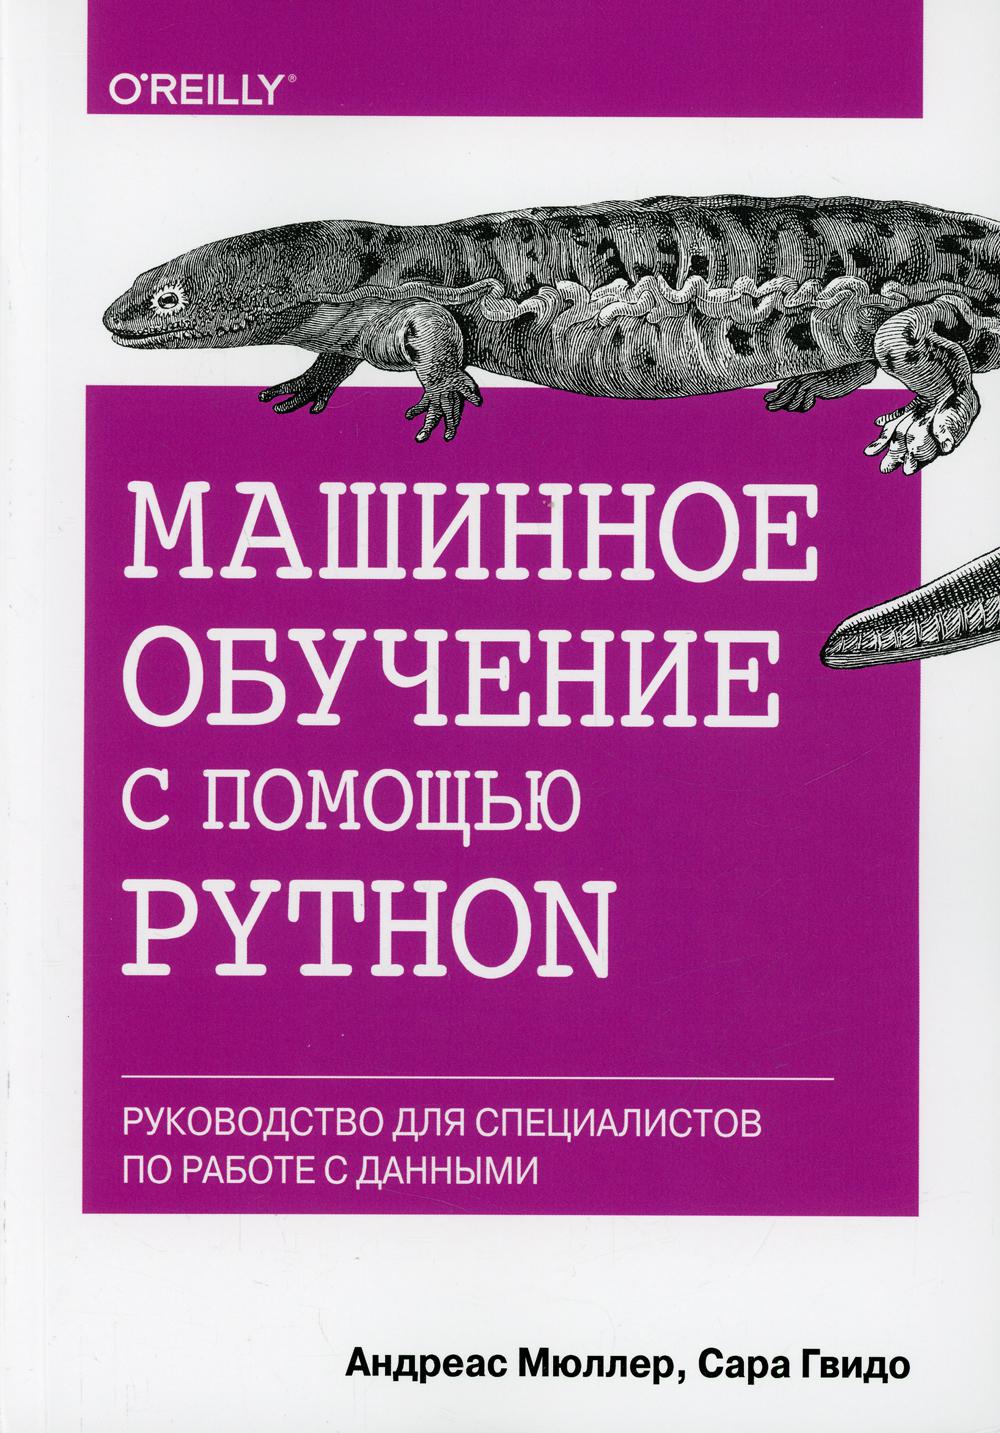     Python.       